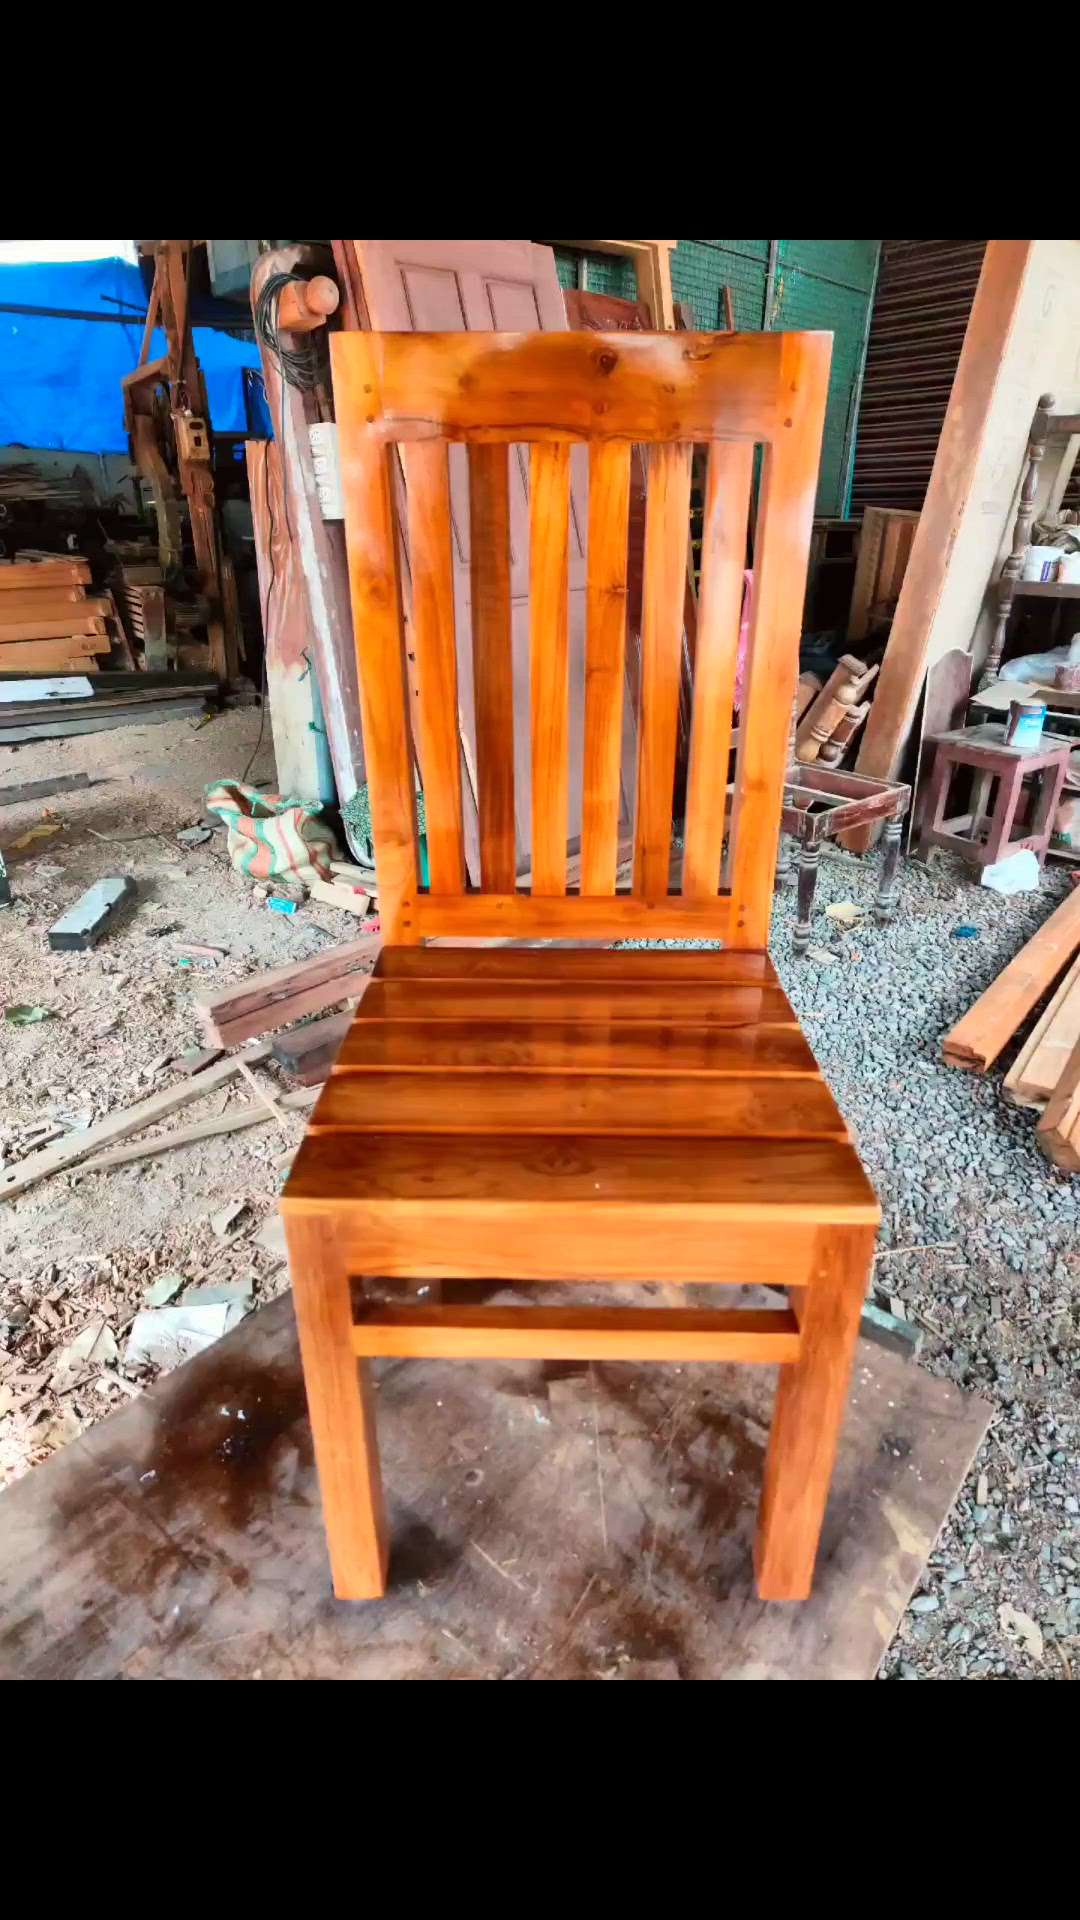 TEAK WOODEN CHAIR 🪑🪑🪚
@KMS WOOD WORKS
 #DiningChairs #chair #DiningTableAndChairs #LivingroomDesigns #LivingRoomTable #RectangularDiningTable #DiningTableAndChairs #RectangularDiningTable #dining #woodenchair #furnitures #teakwood